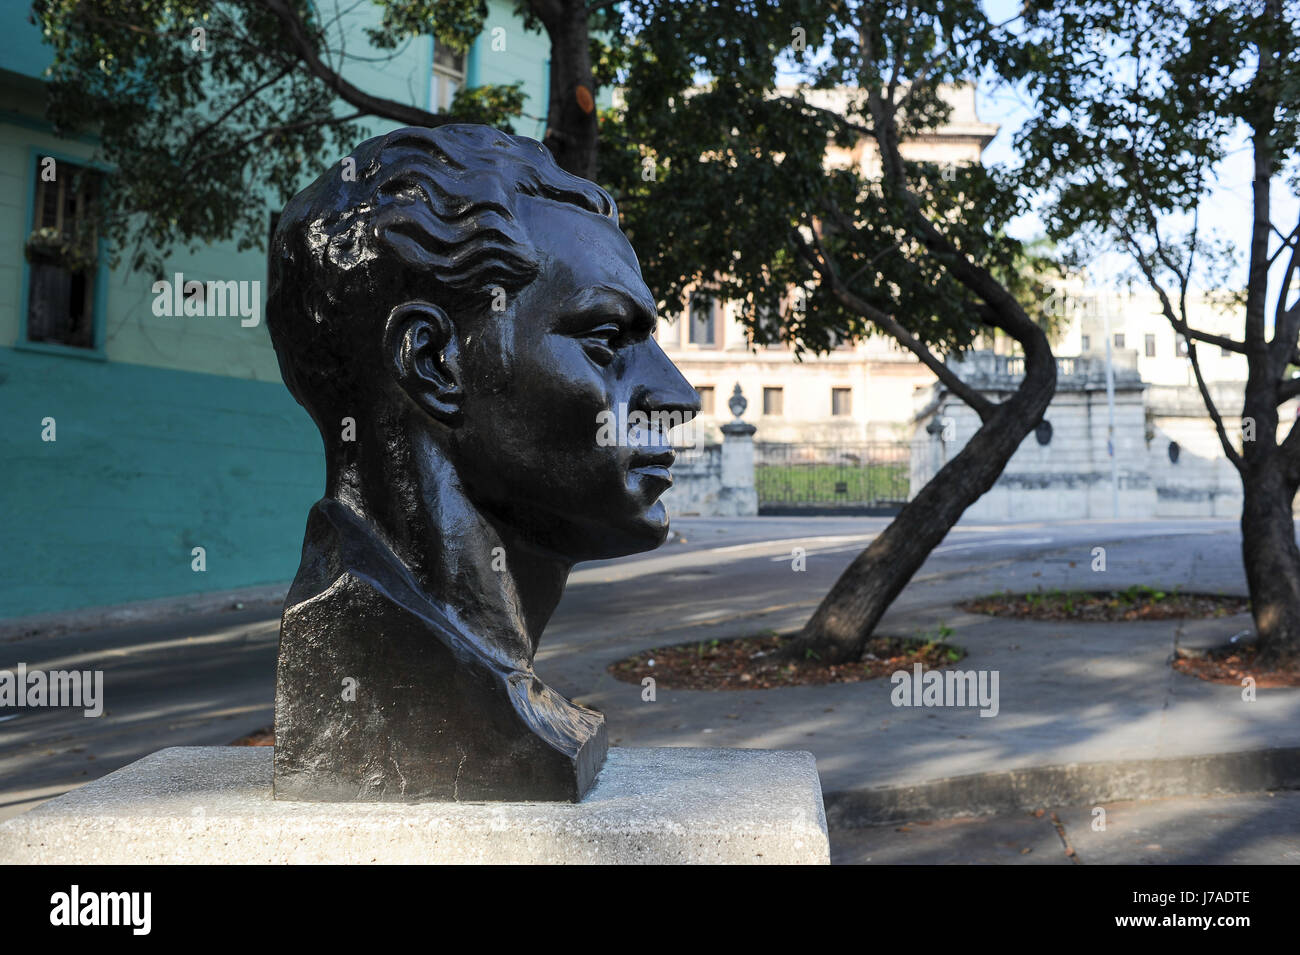 Statue of Julio Antonio Mella in Vedado, district of Havana, Cuba Stock Photo